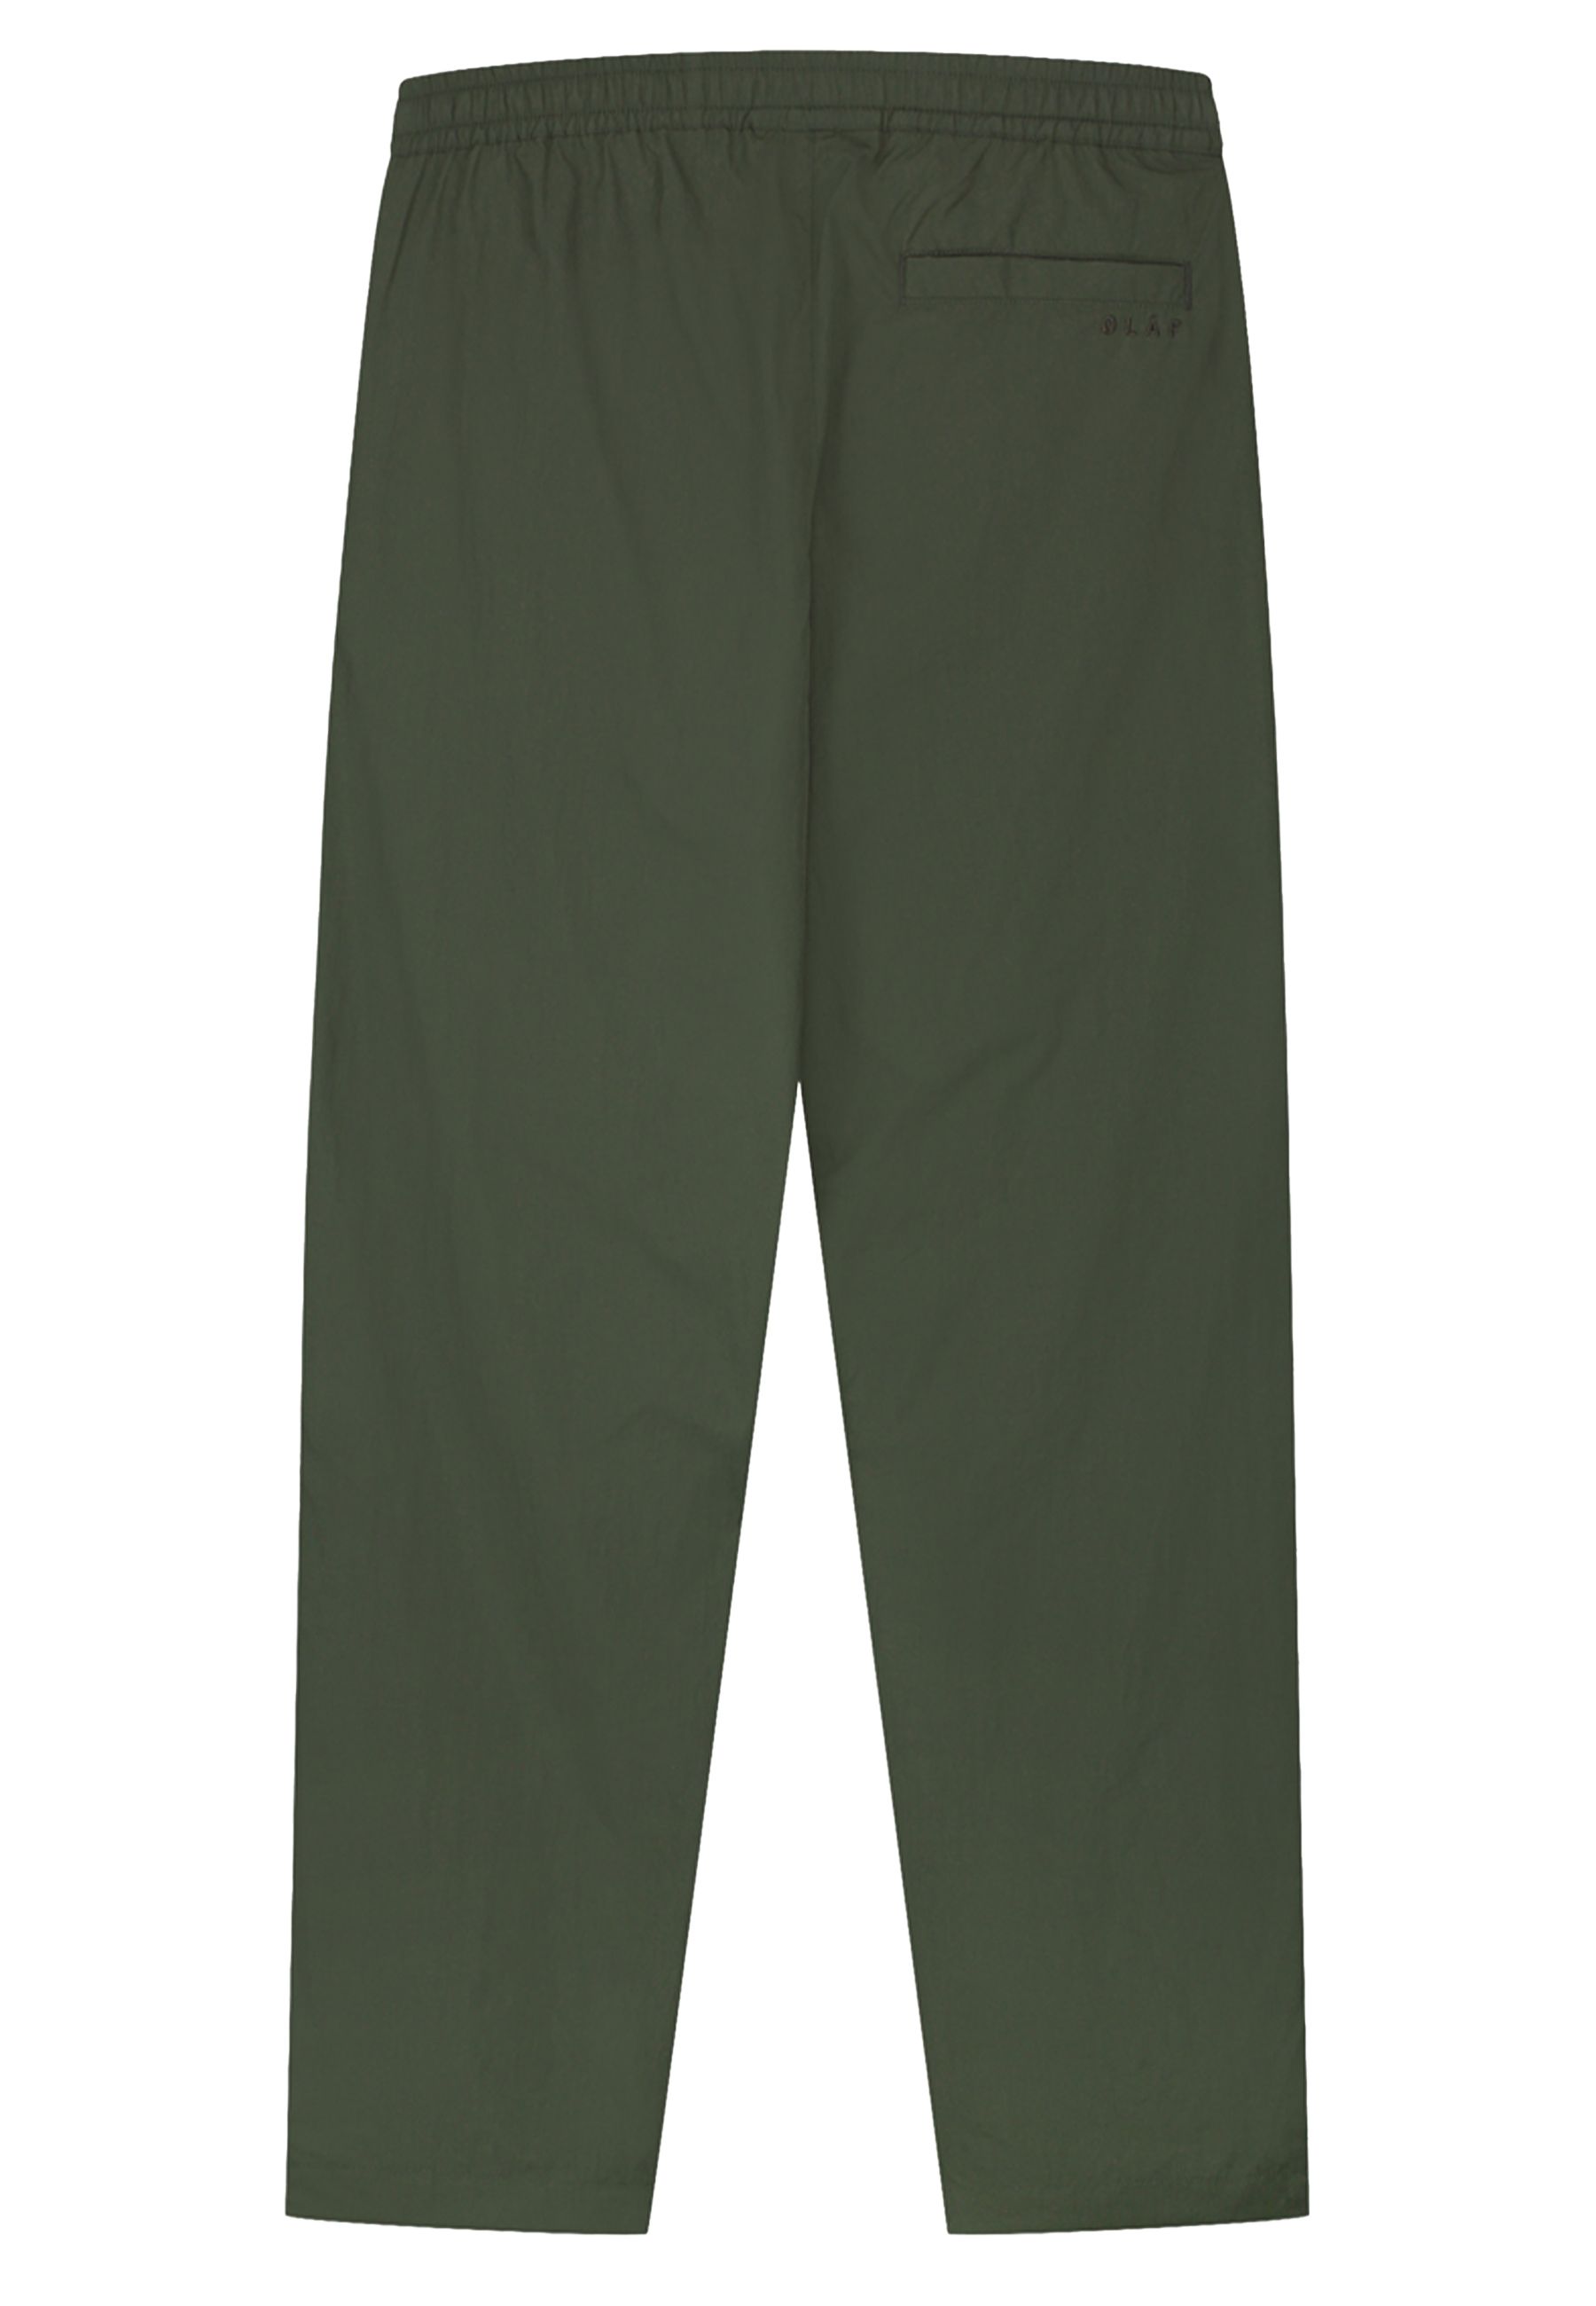 Crinkle nylon track pantalons groen